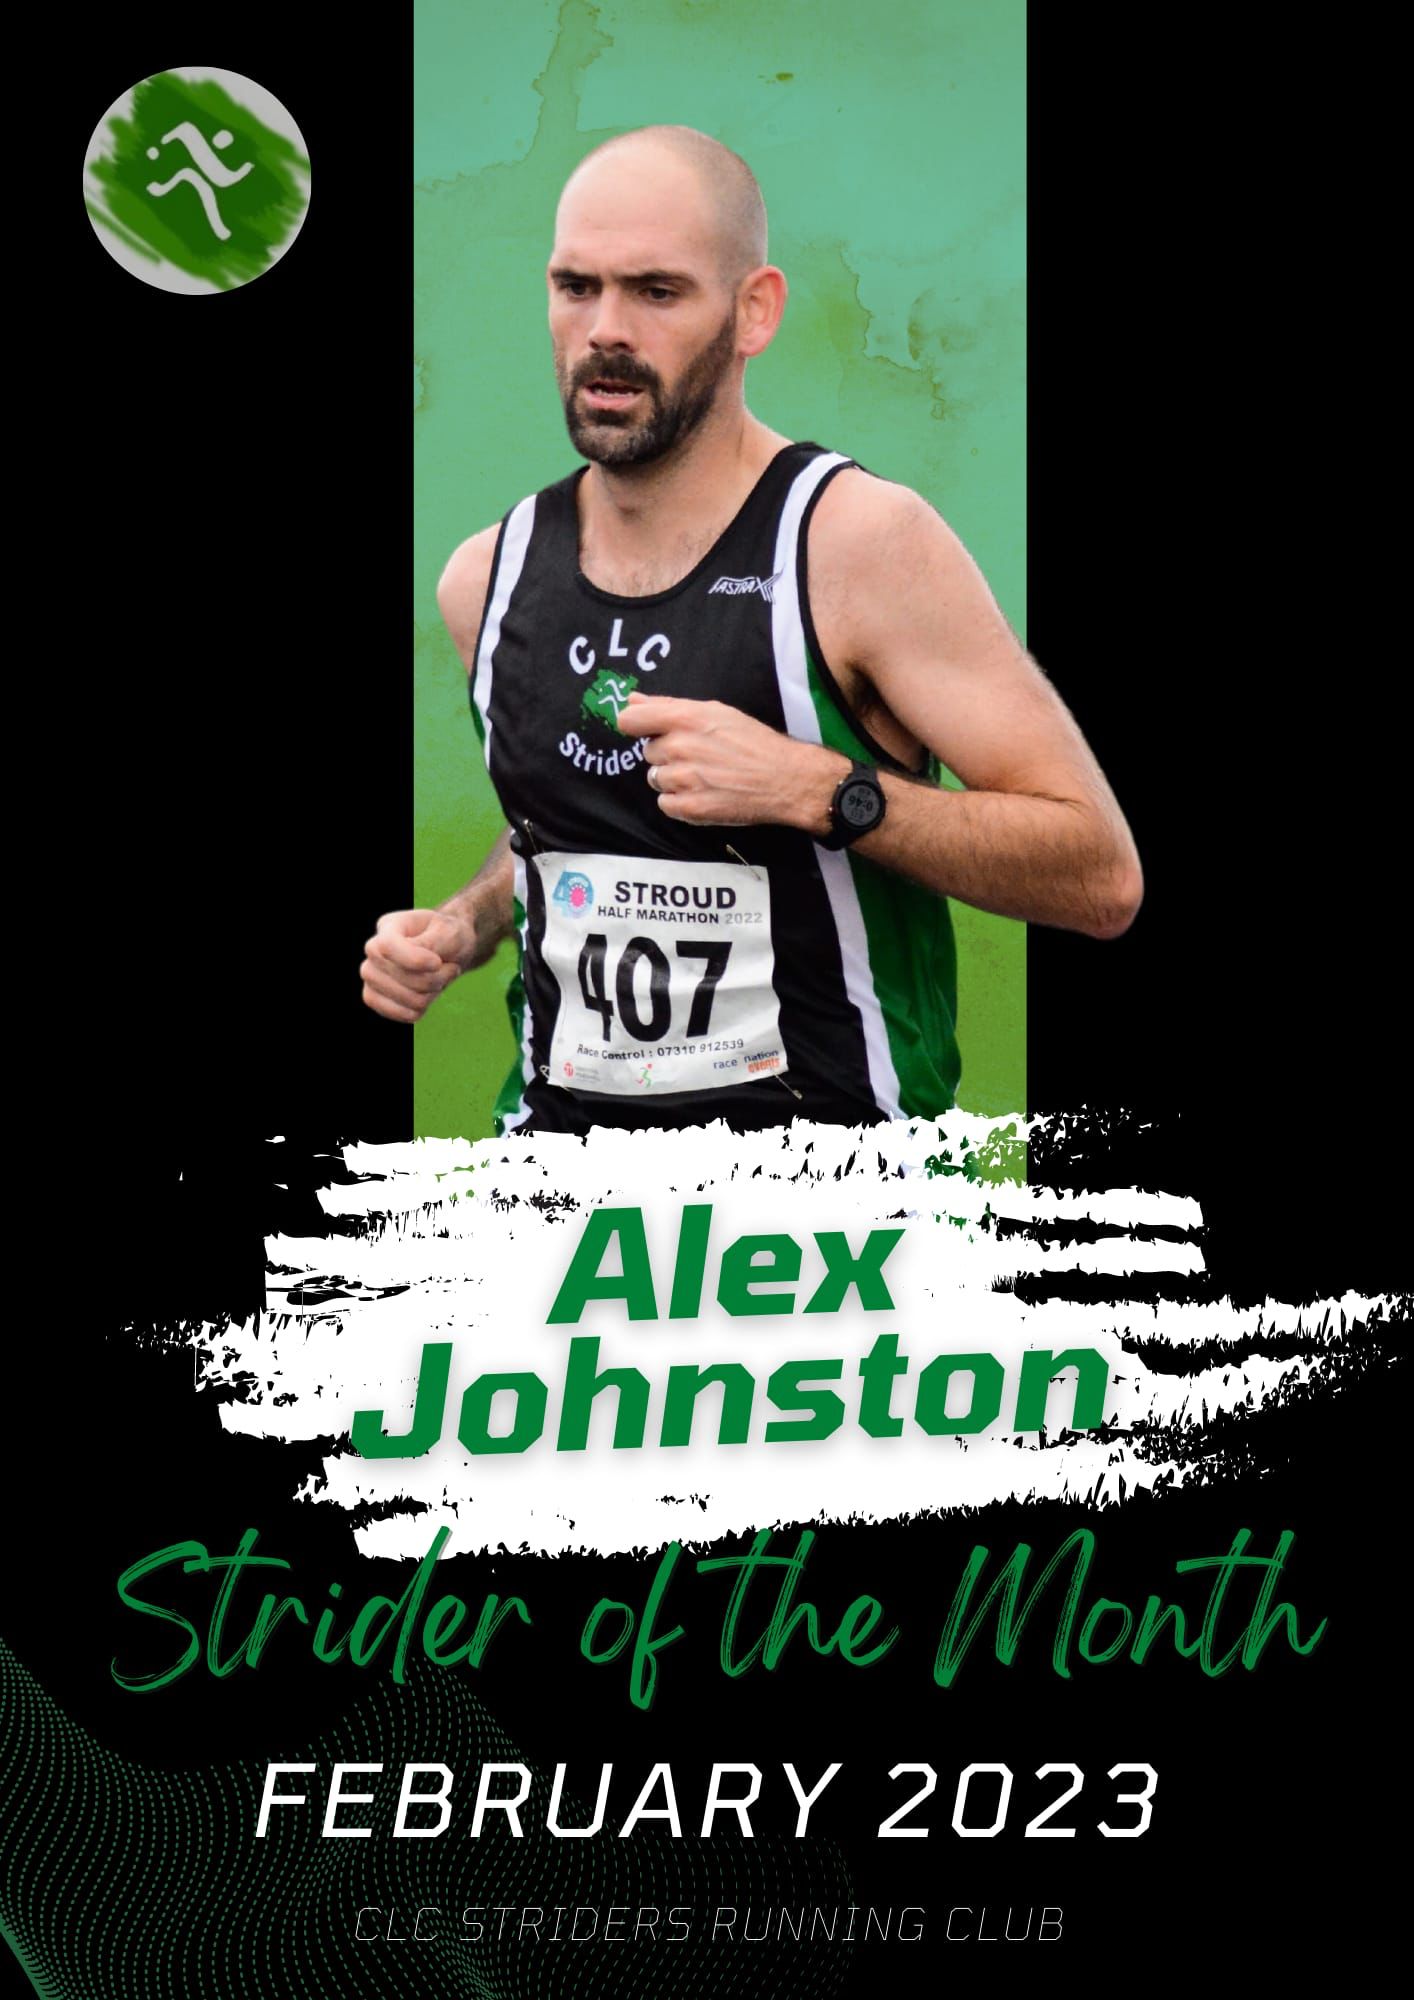 Strider of the month Alex Johnston